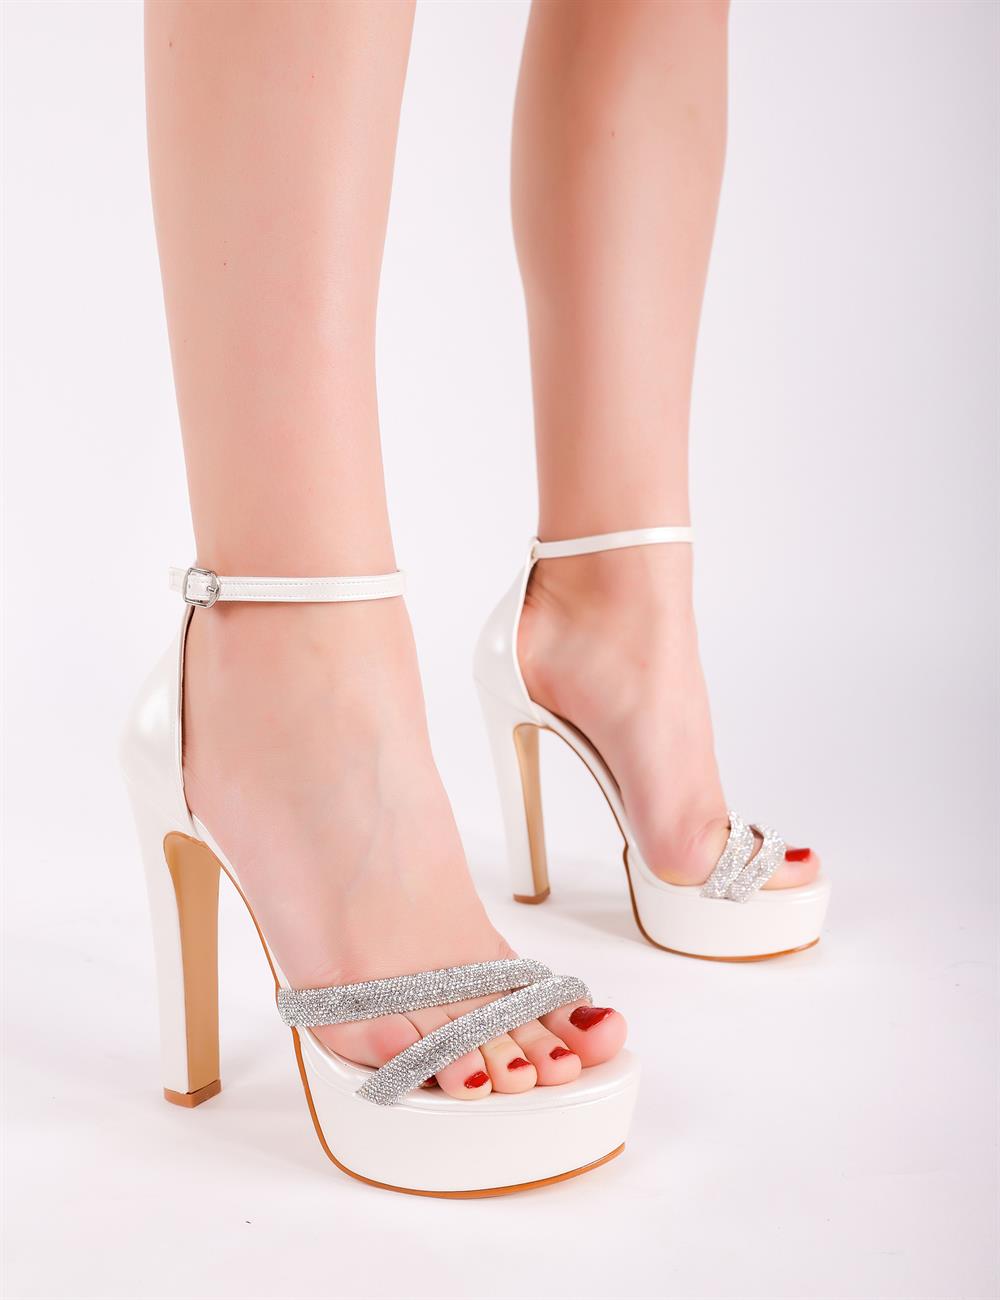 Gibson Kristal Taşlı Platform Ayakkabı Beyaz - KADIN AYAKKABI